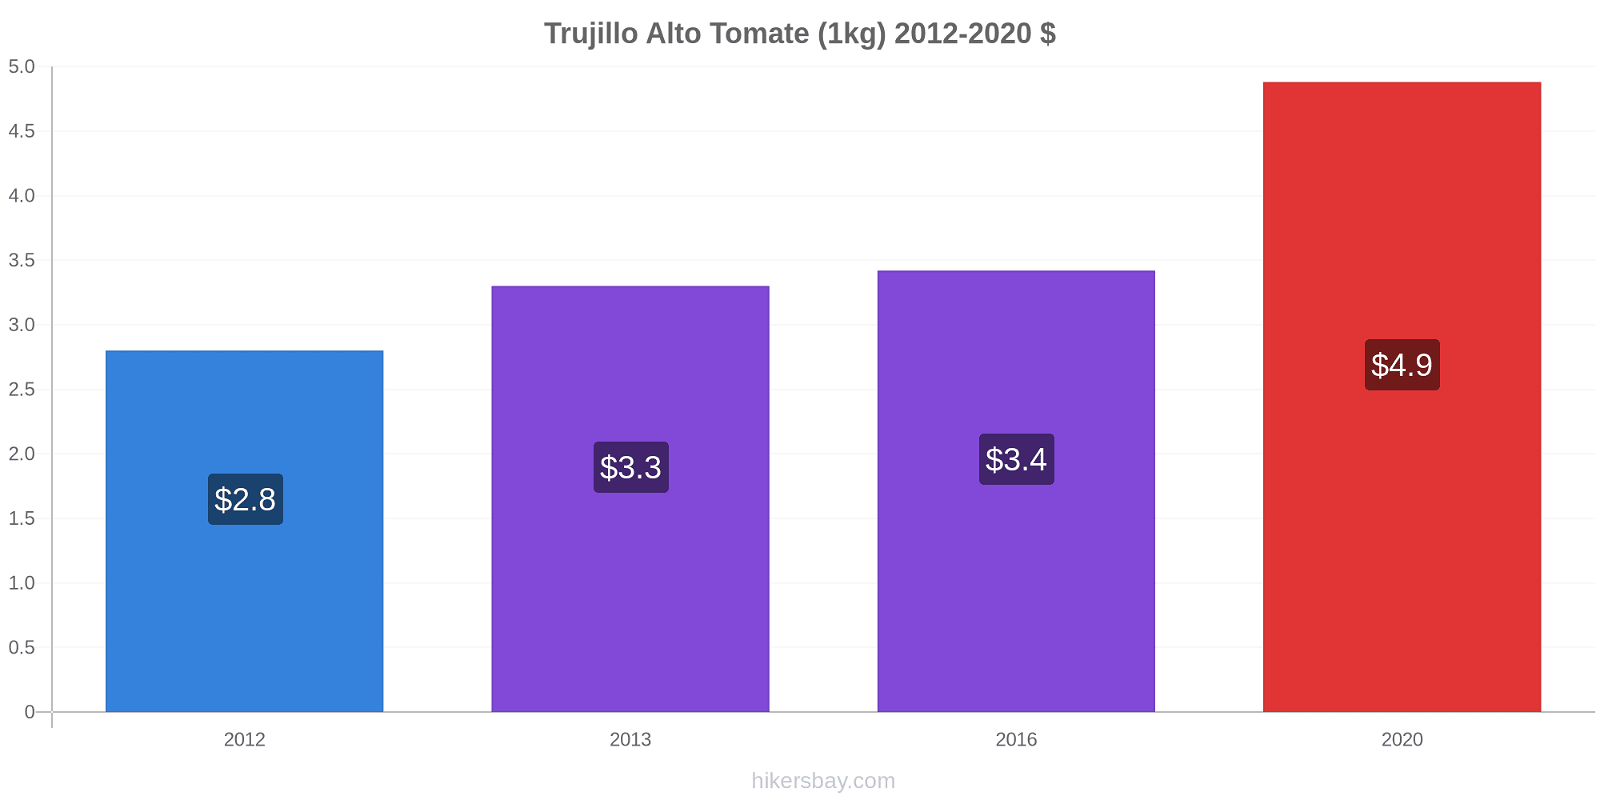 Trujillo Alto variação de preço Tomate (1kg) hikersbay.com